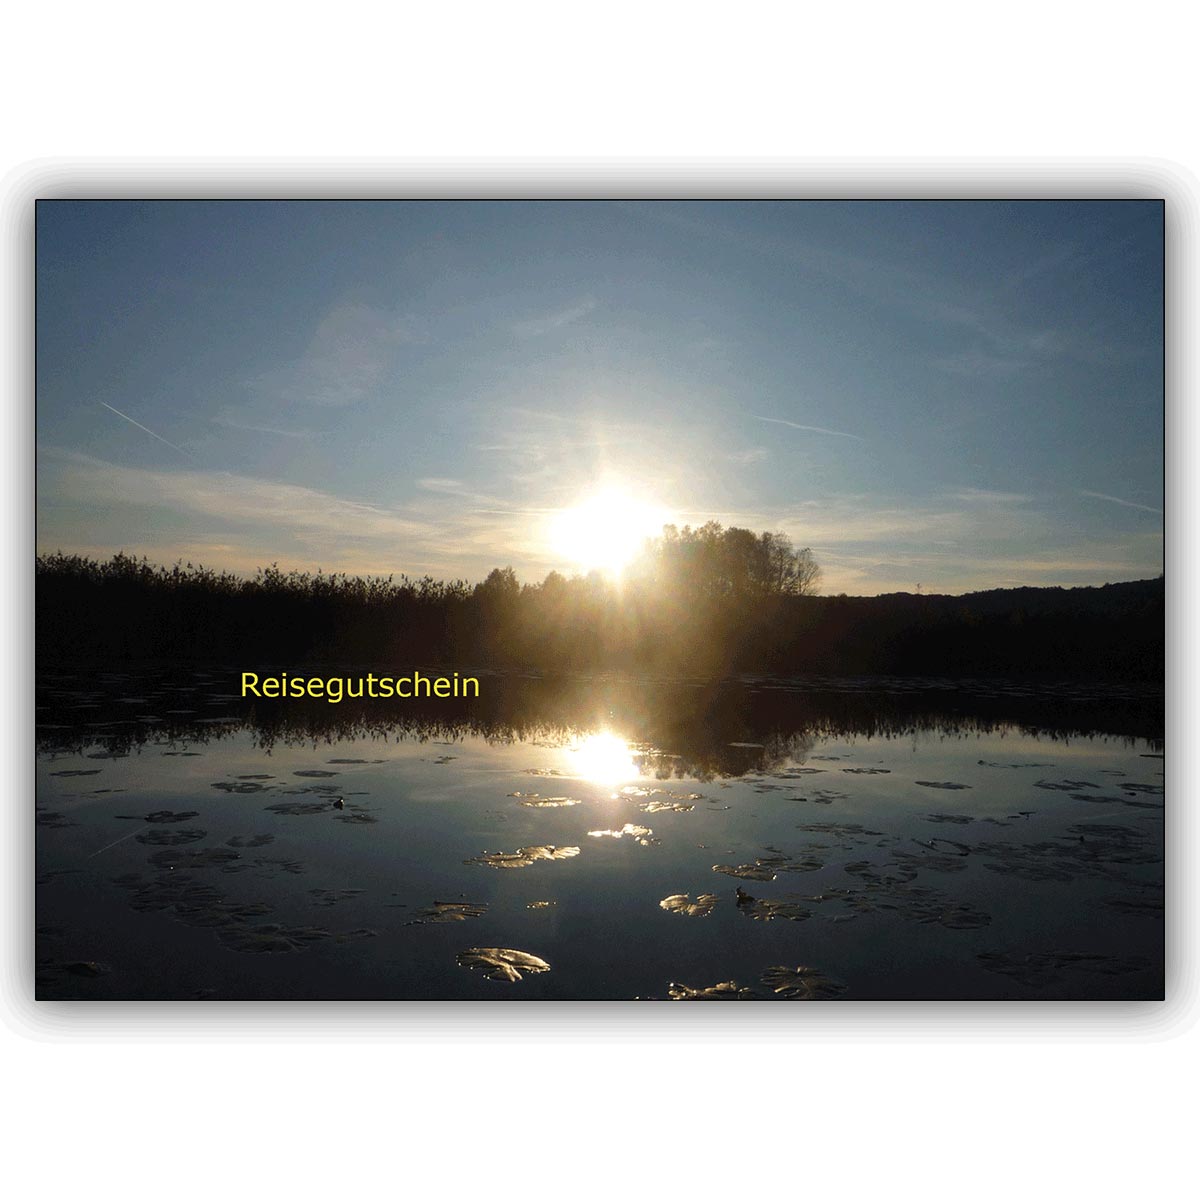 Elegante Landschafts Reisegutschein Klappkarte (blanko) mit schöner Seenlandschaft und Seerosen